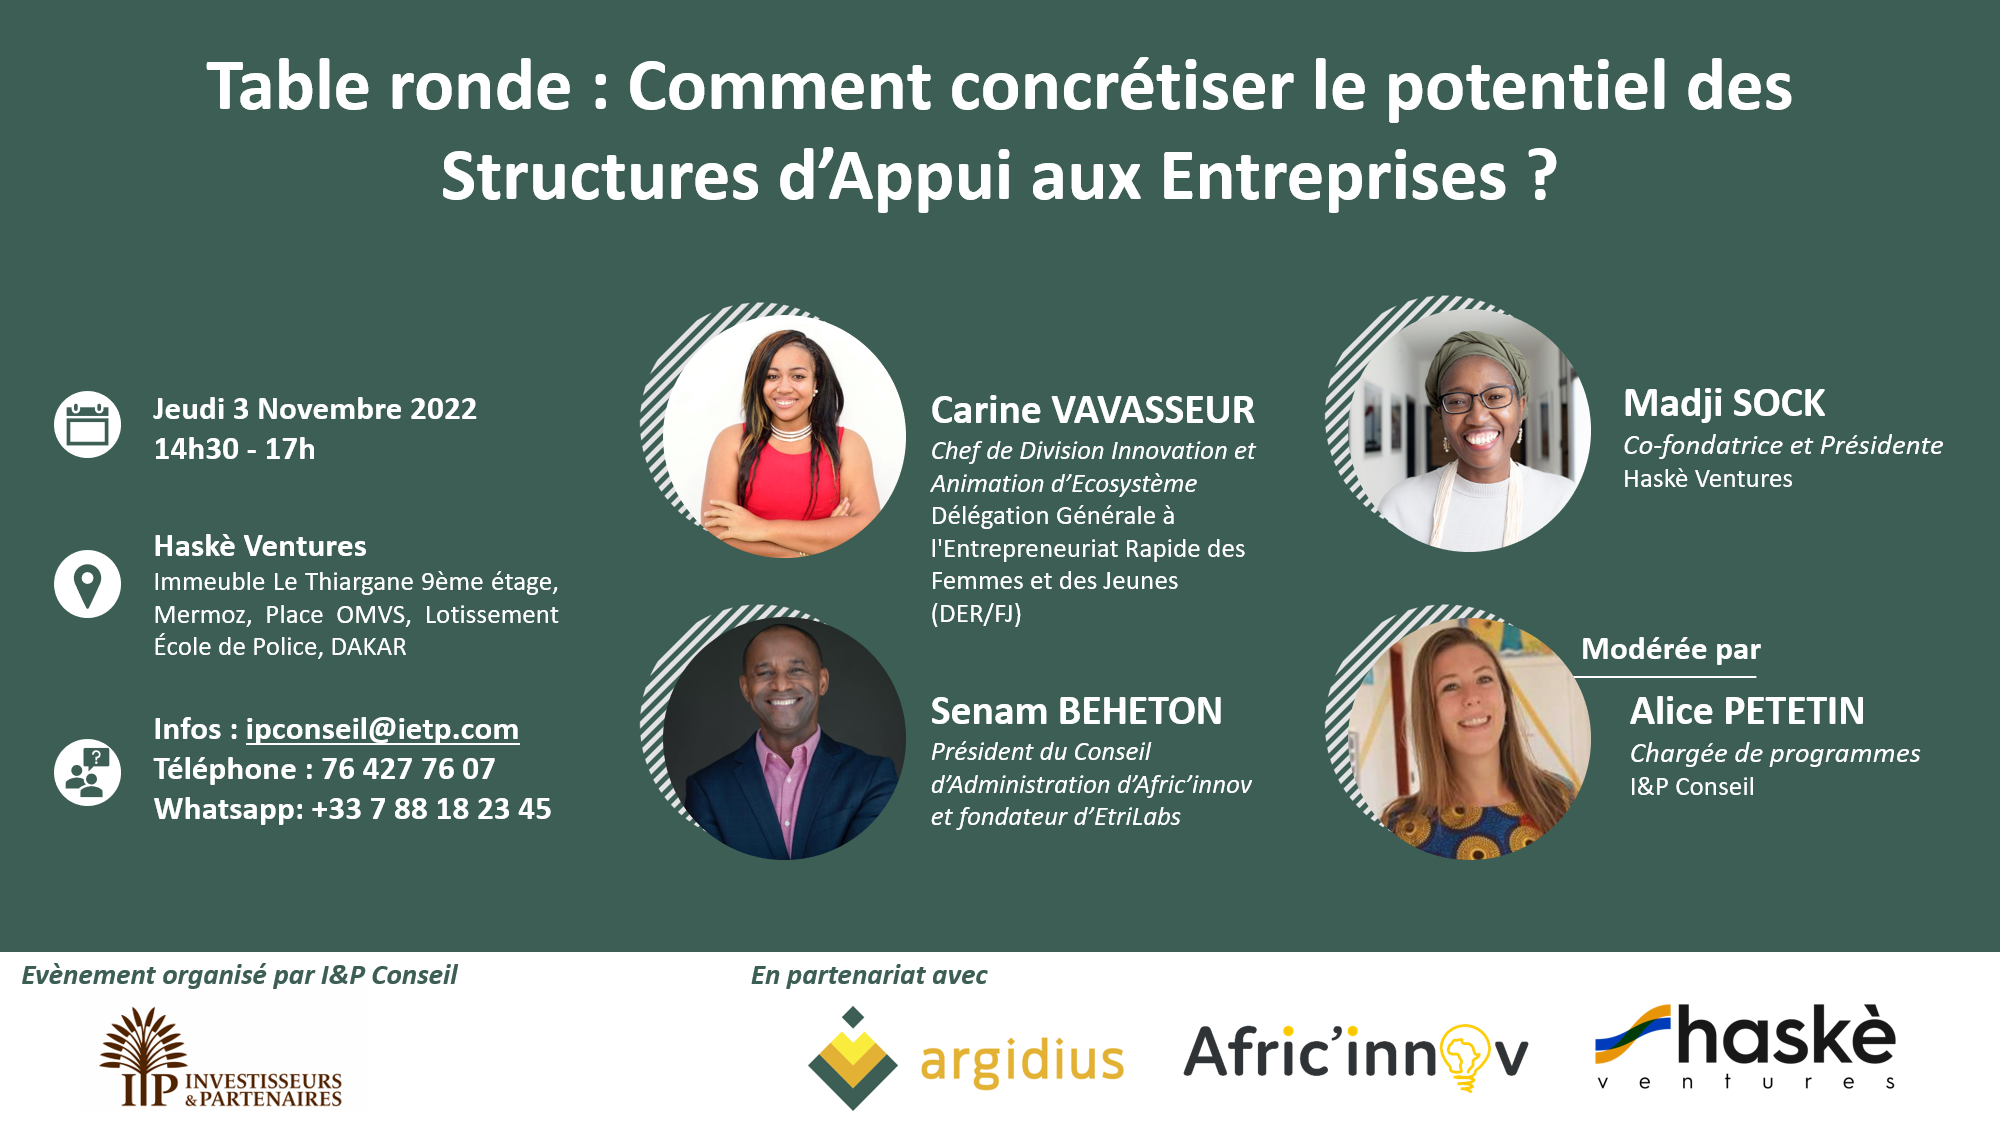 Dakar | Table ronde : “Comment concrétiser le potentiel des Structures d’Appui aux Entreprises ?”